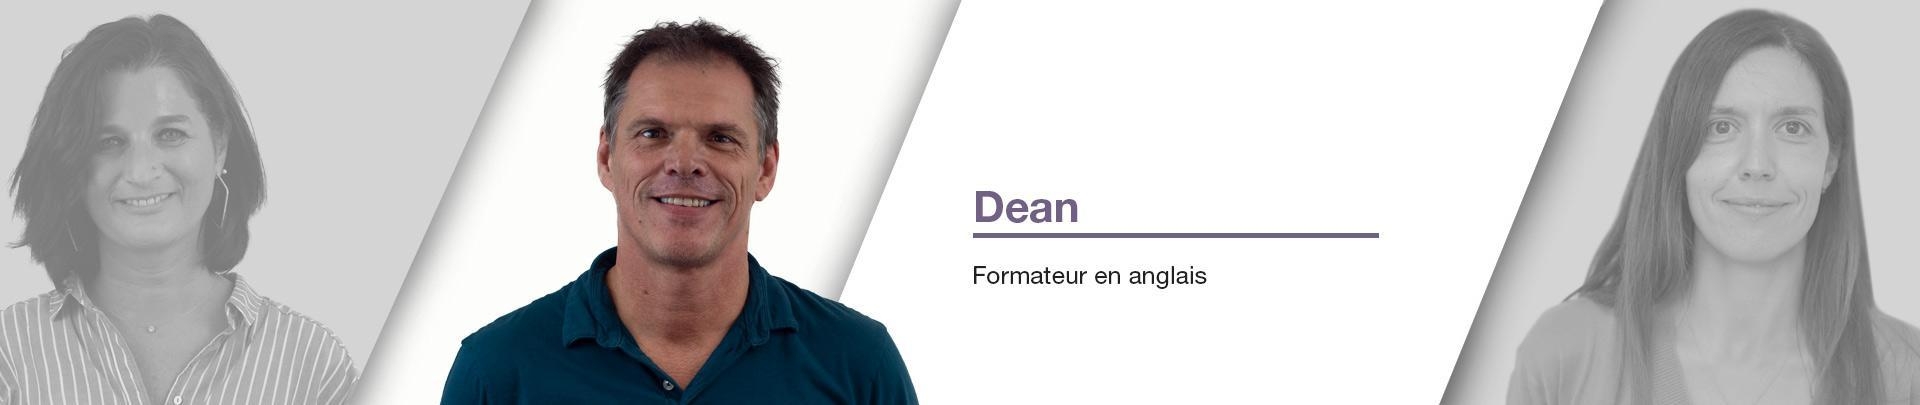 Dean - Formateur en anglais